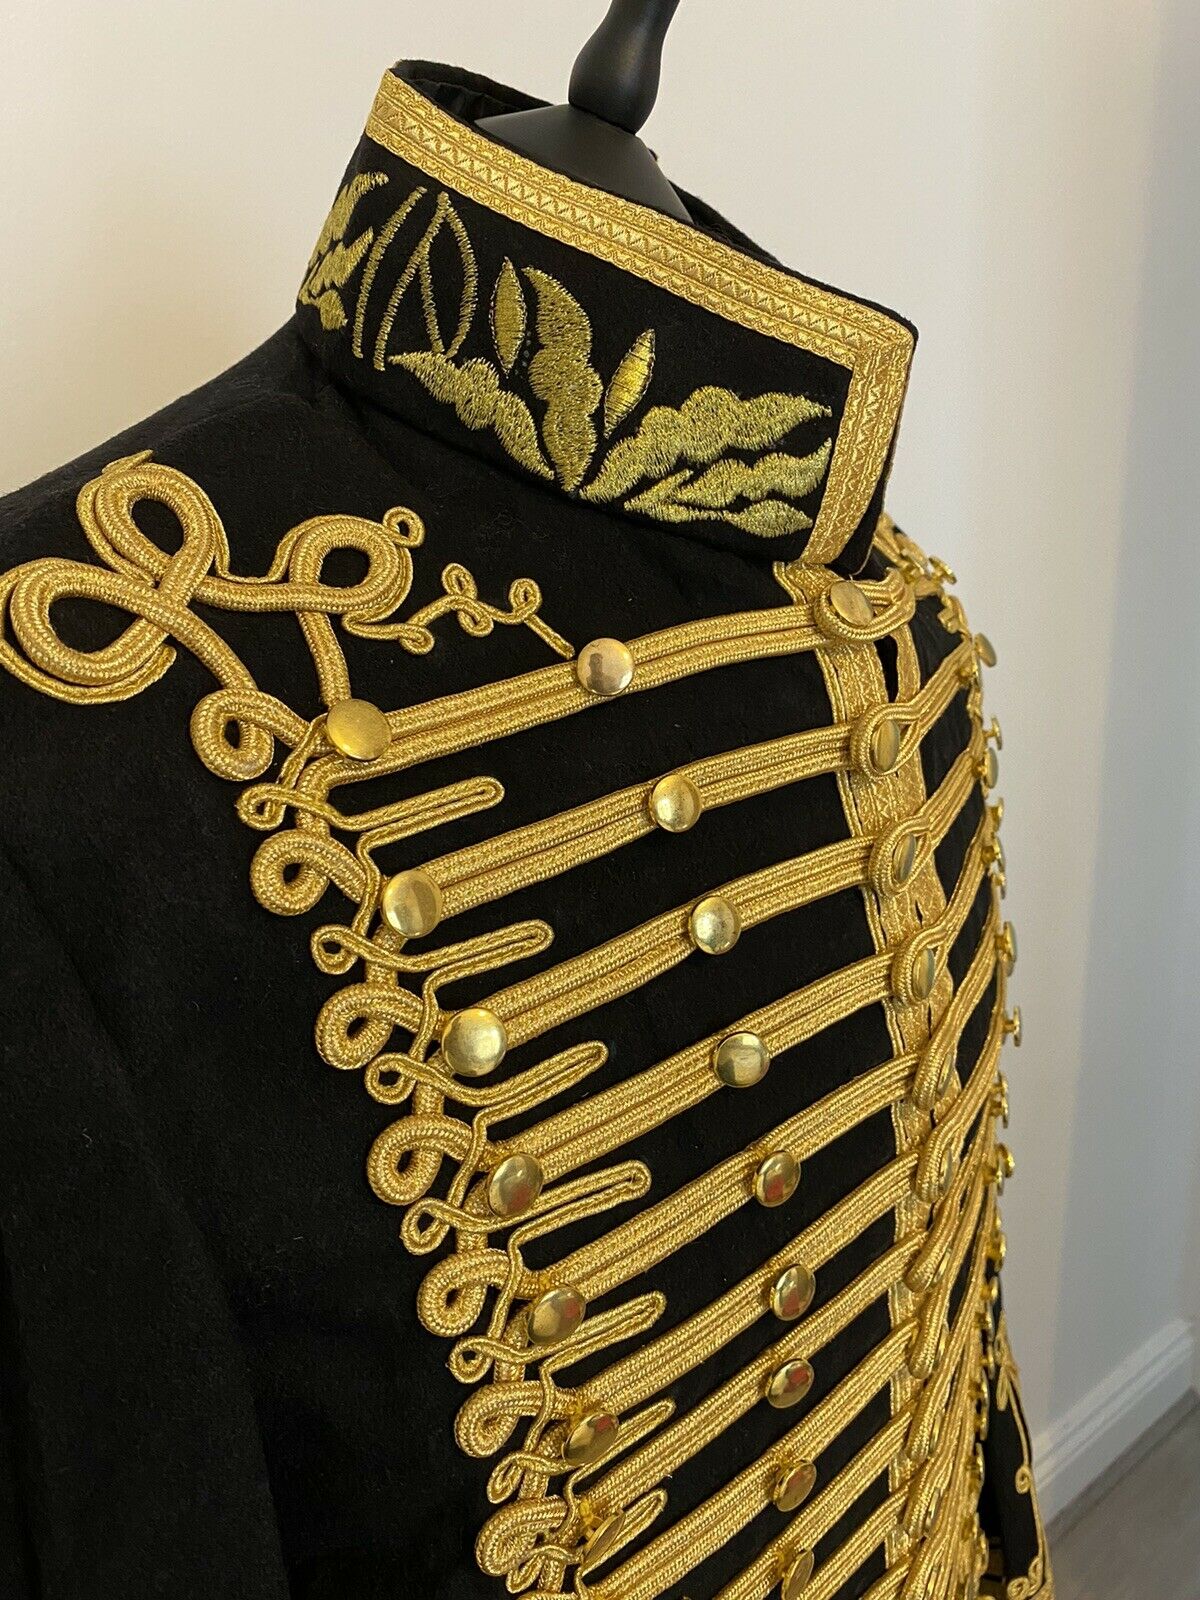 Black Napoleonic Military Jimmie Hendrix Hussar Jacket